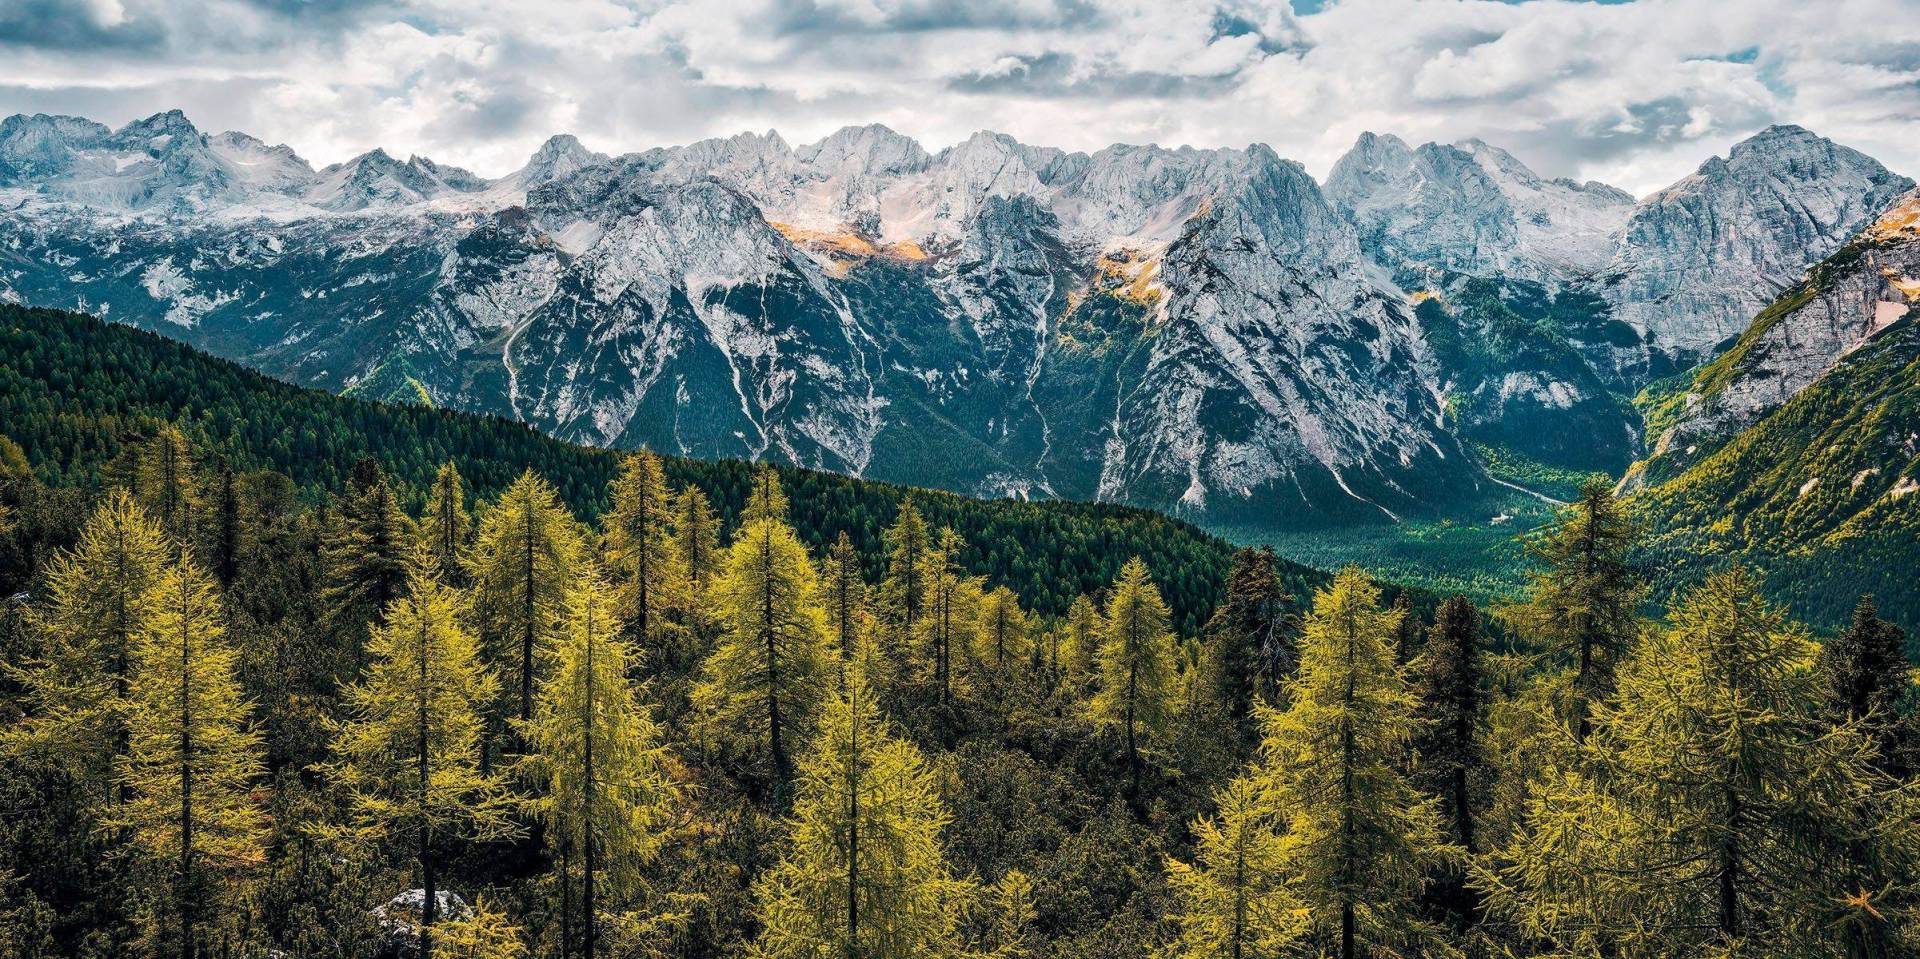 Komar Vliestapete "Wild Dolomites" von Komar